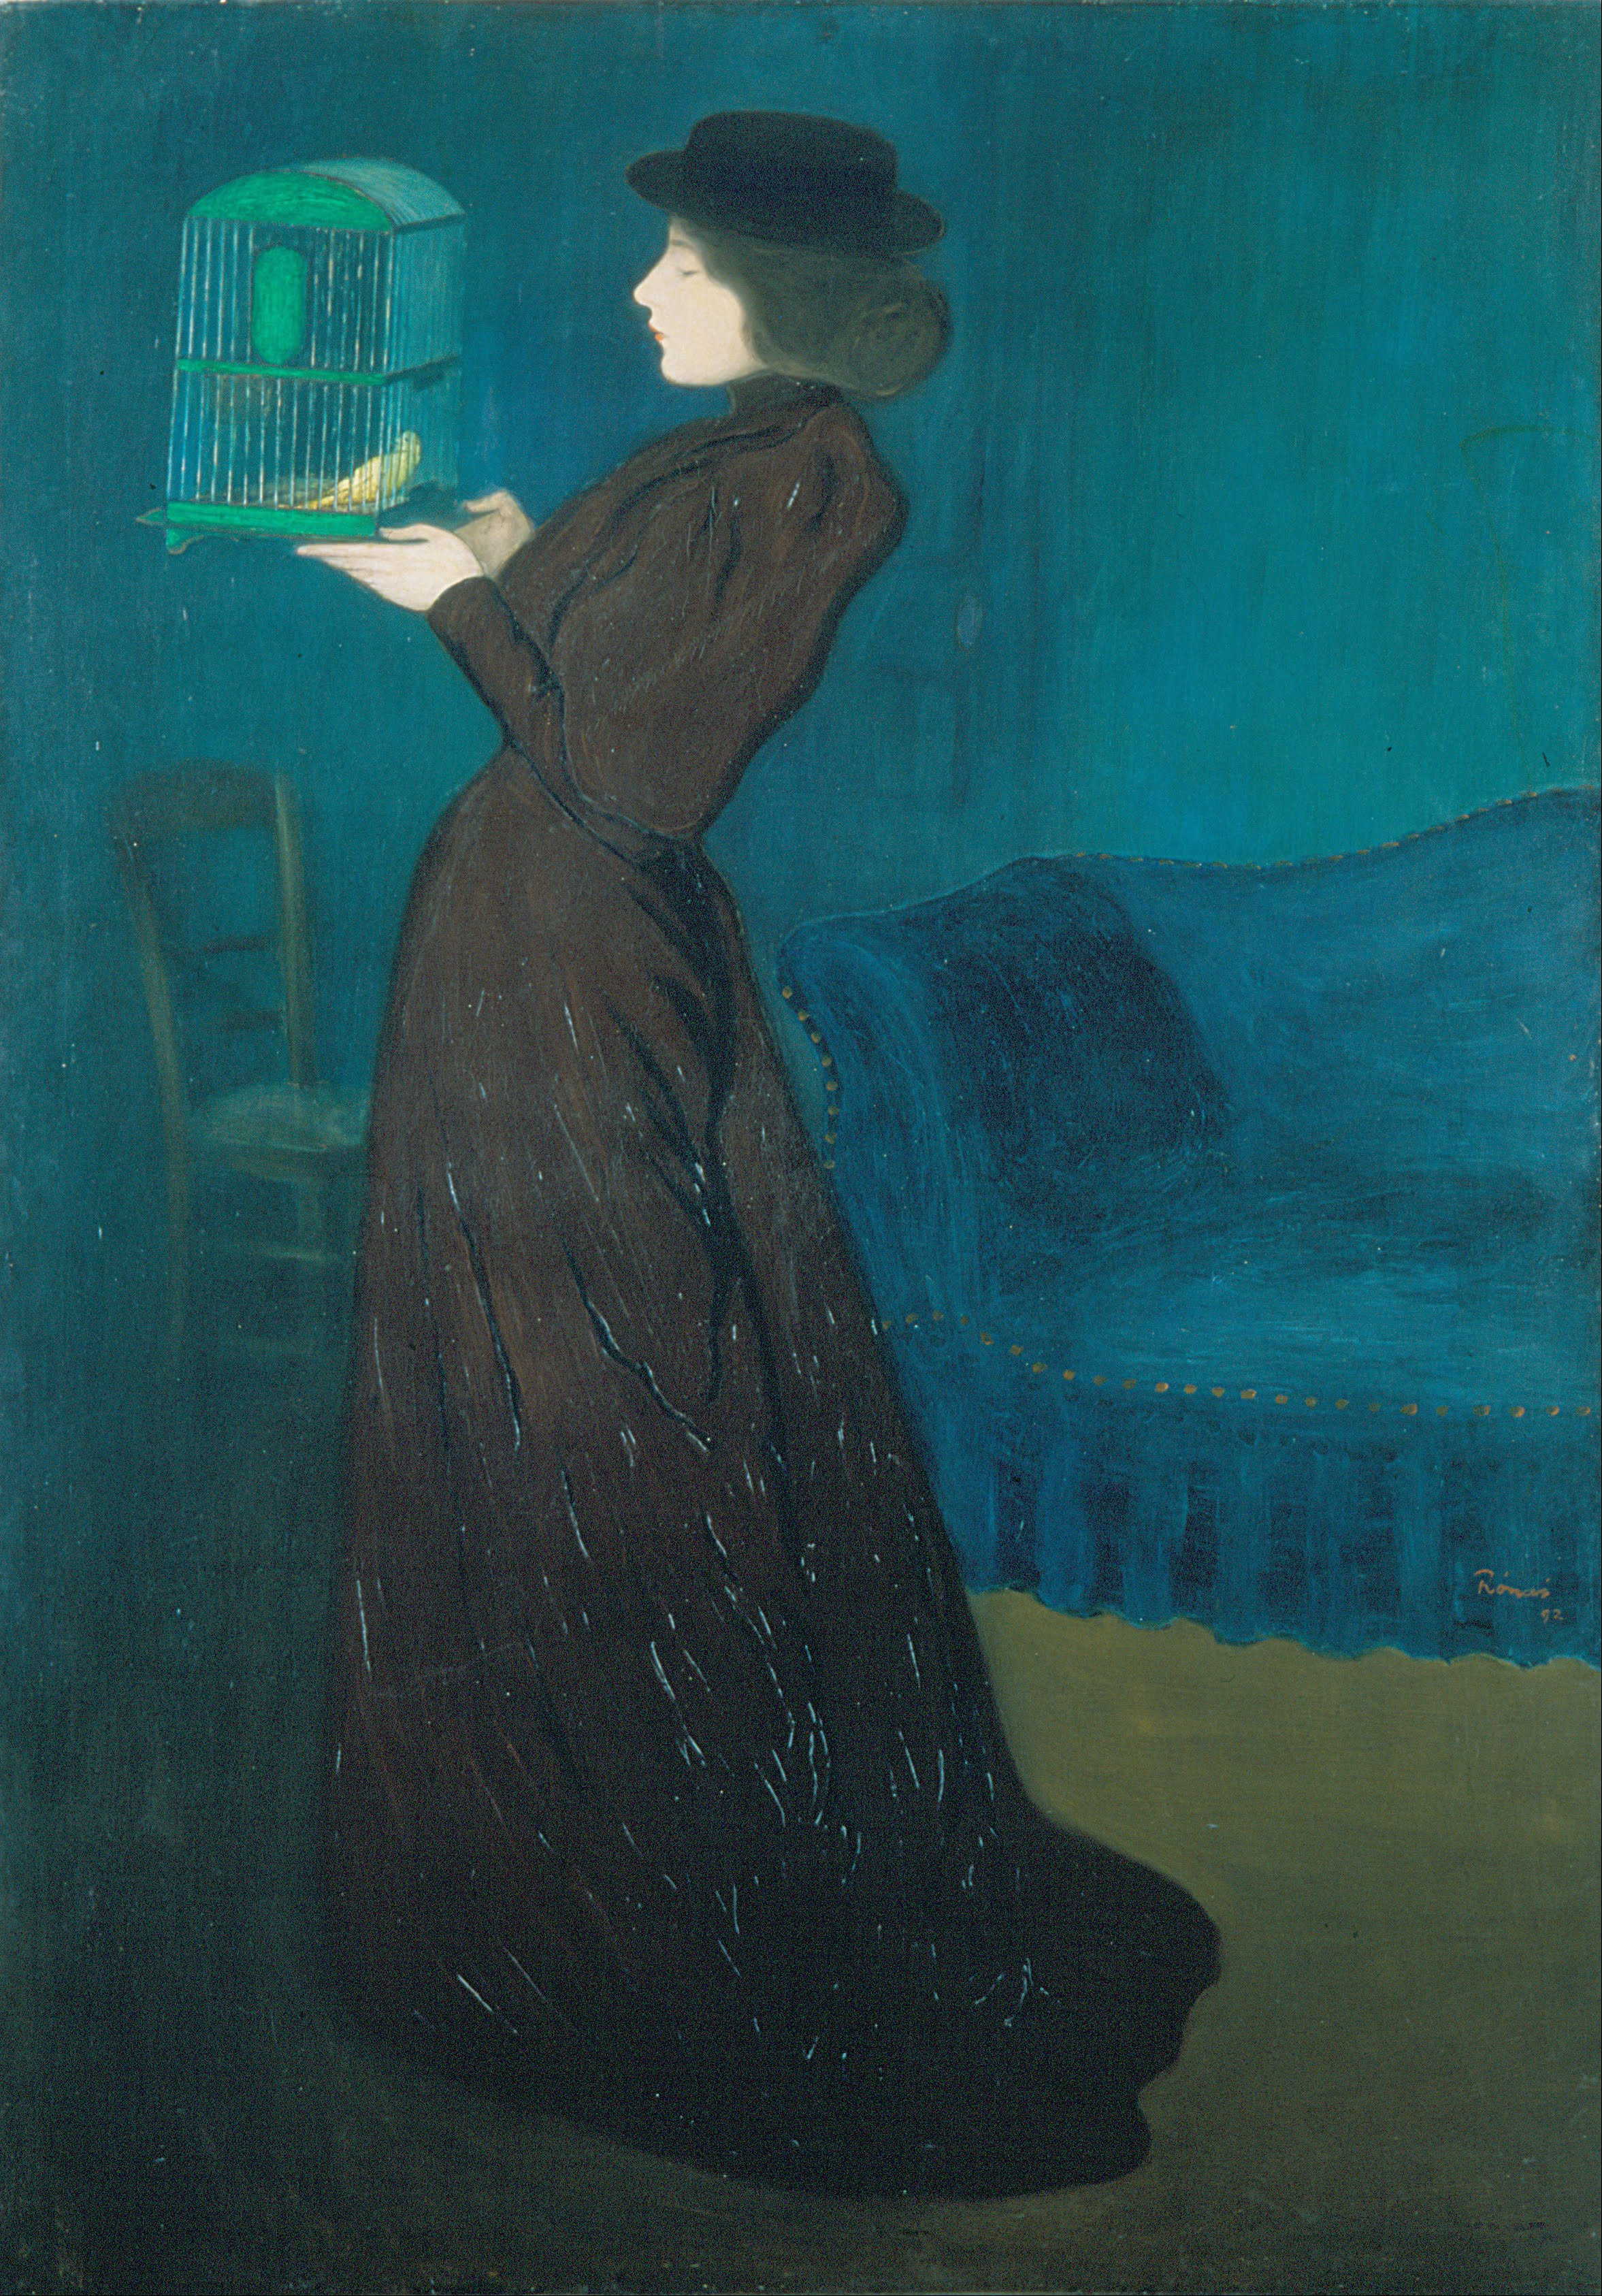 Femme à la cage by József Rippl-Rónai - 1892 Galerie nationale hongroise, Budapest